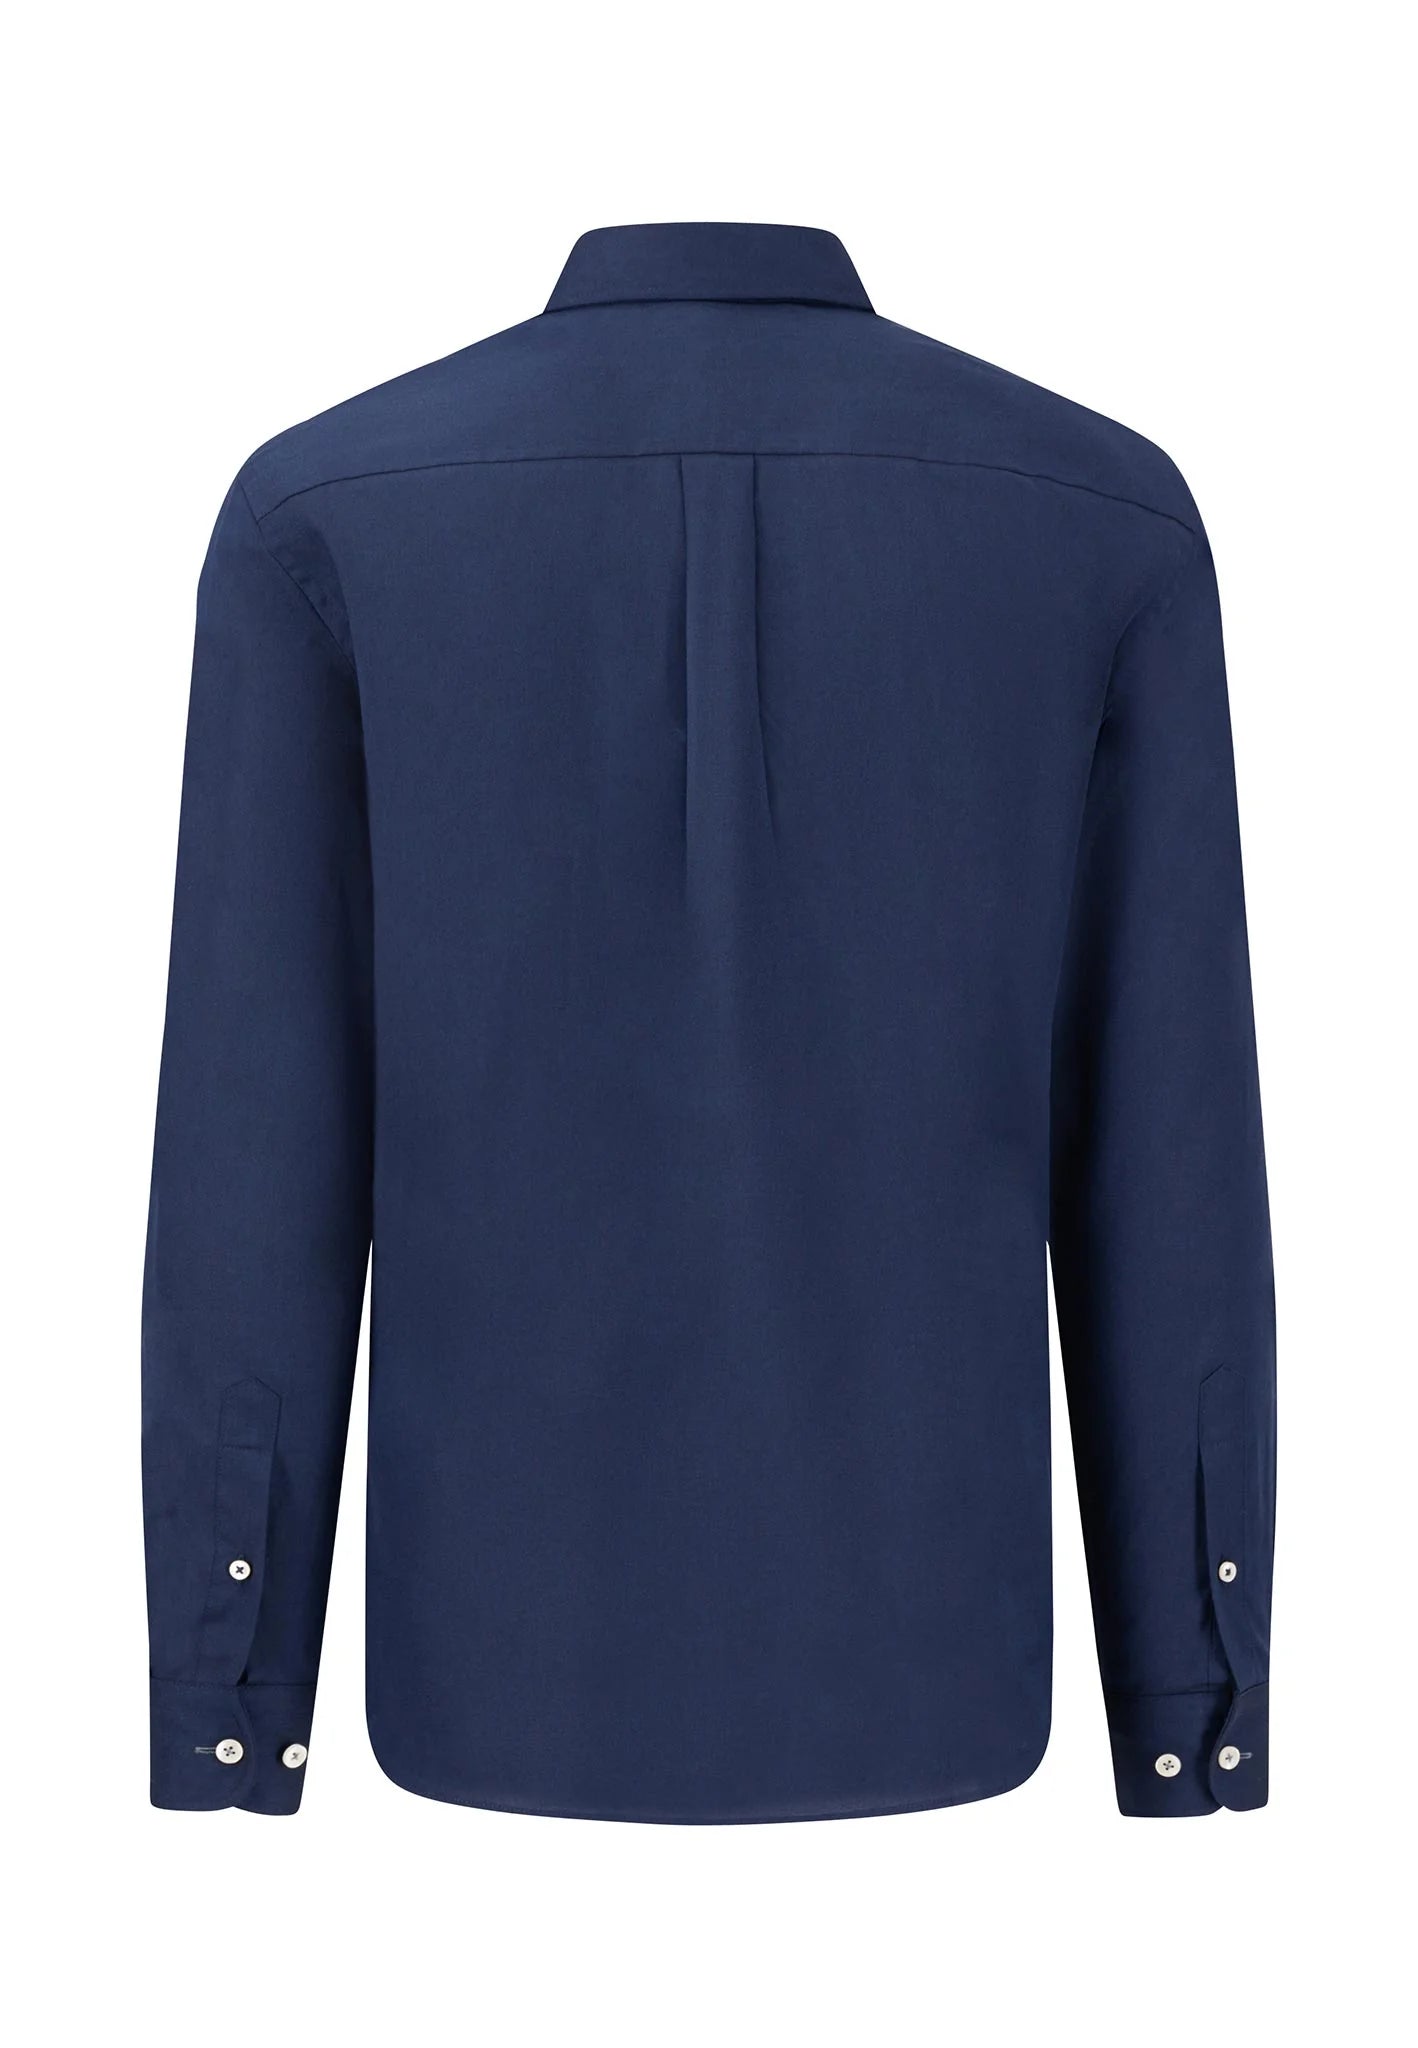 FYNCH HATTON Oxford Shirt - Men's Soft Cotton – Navy